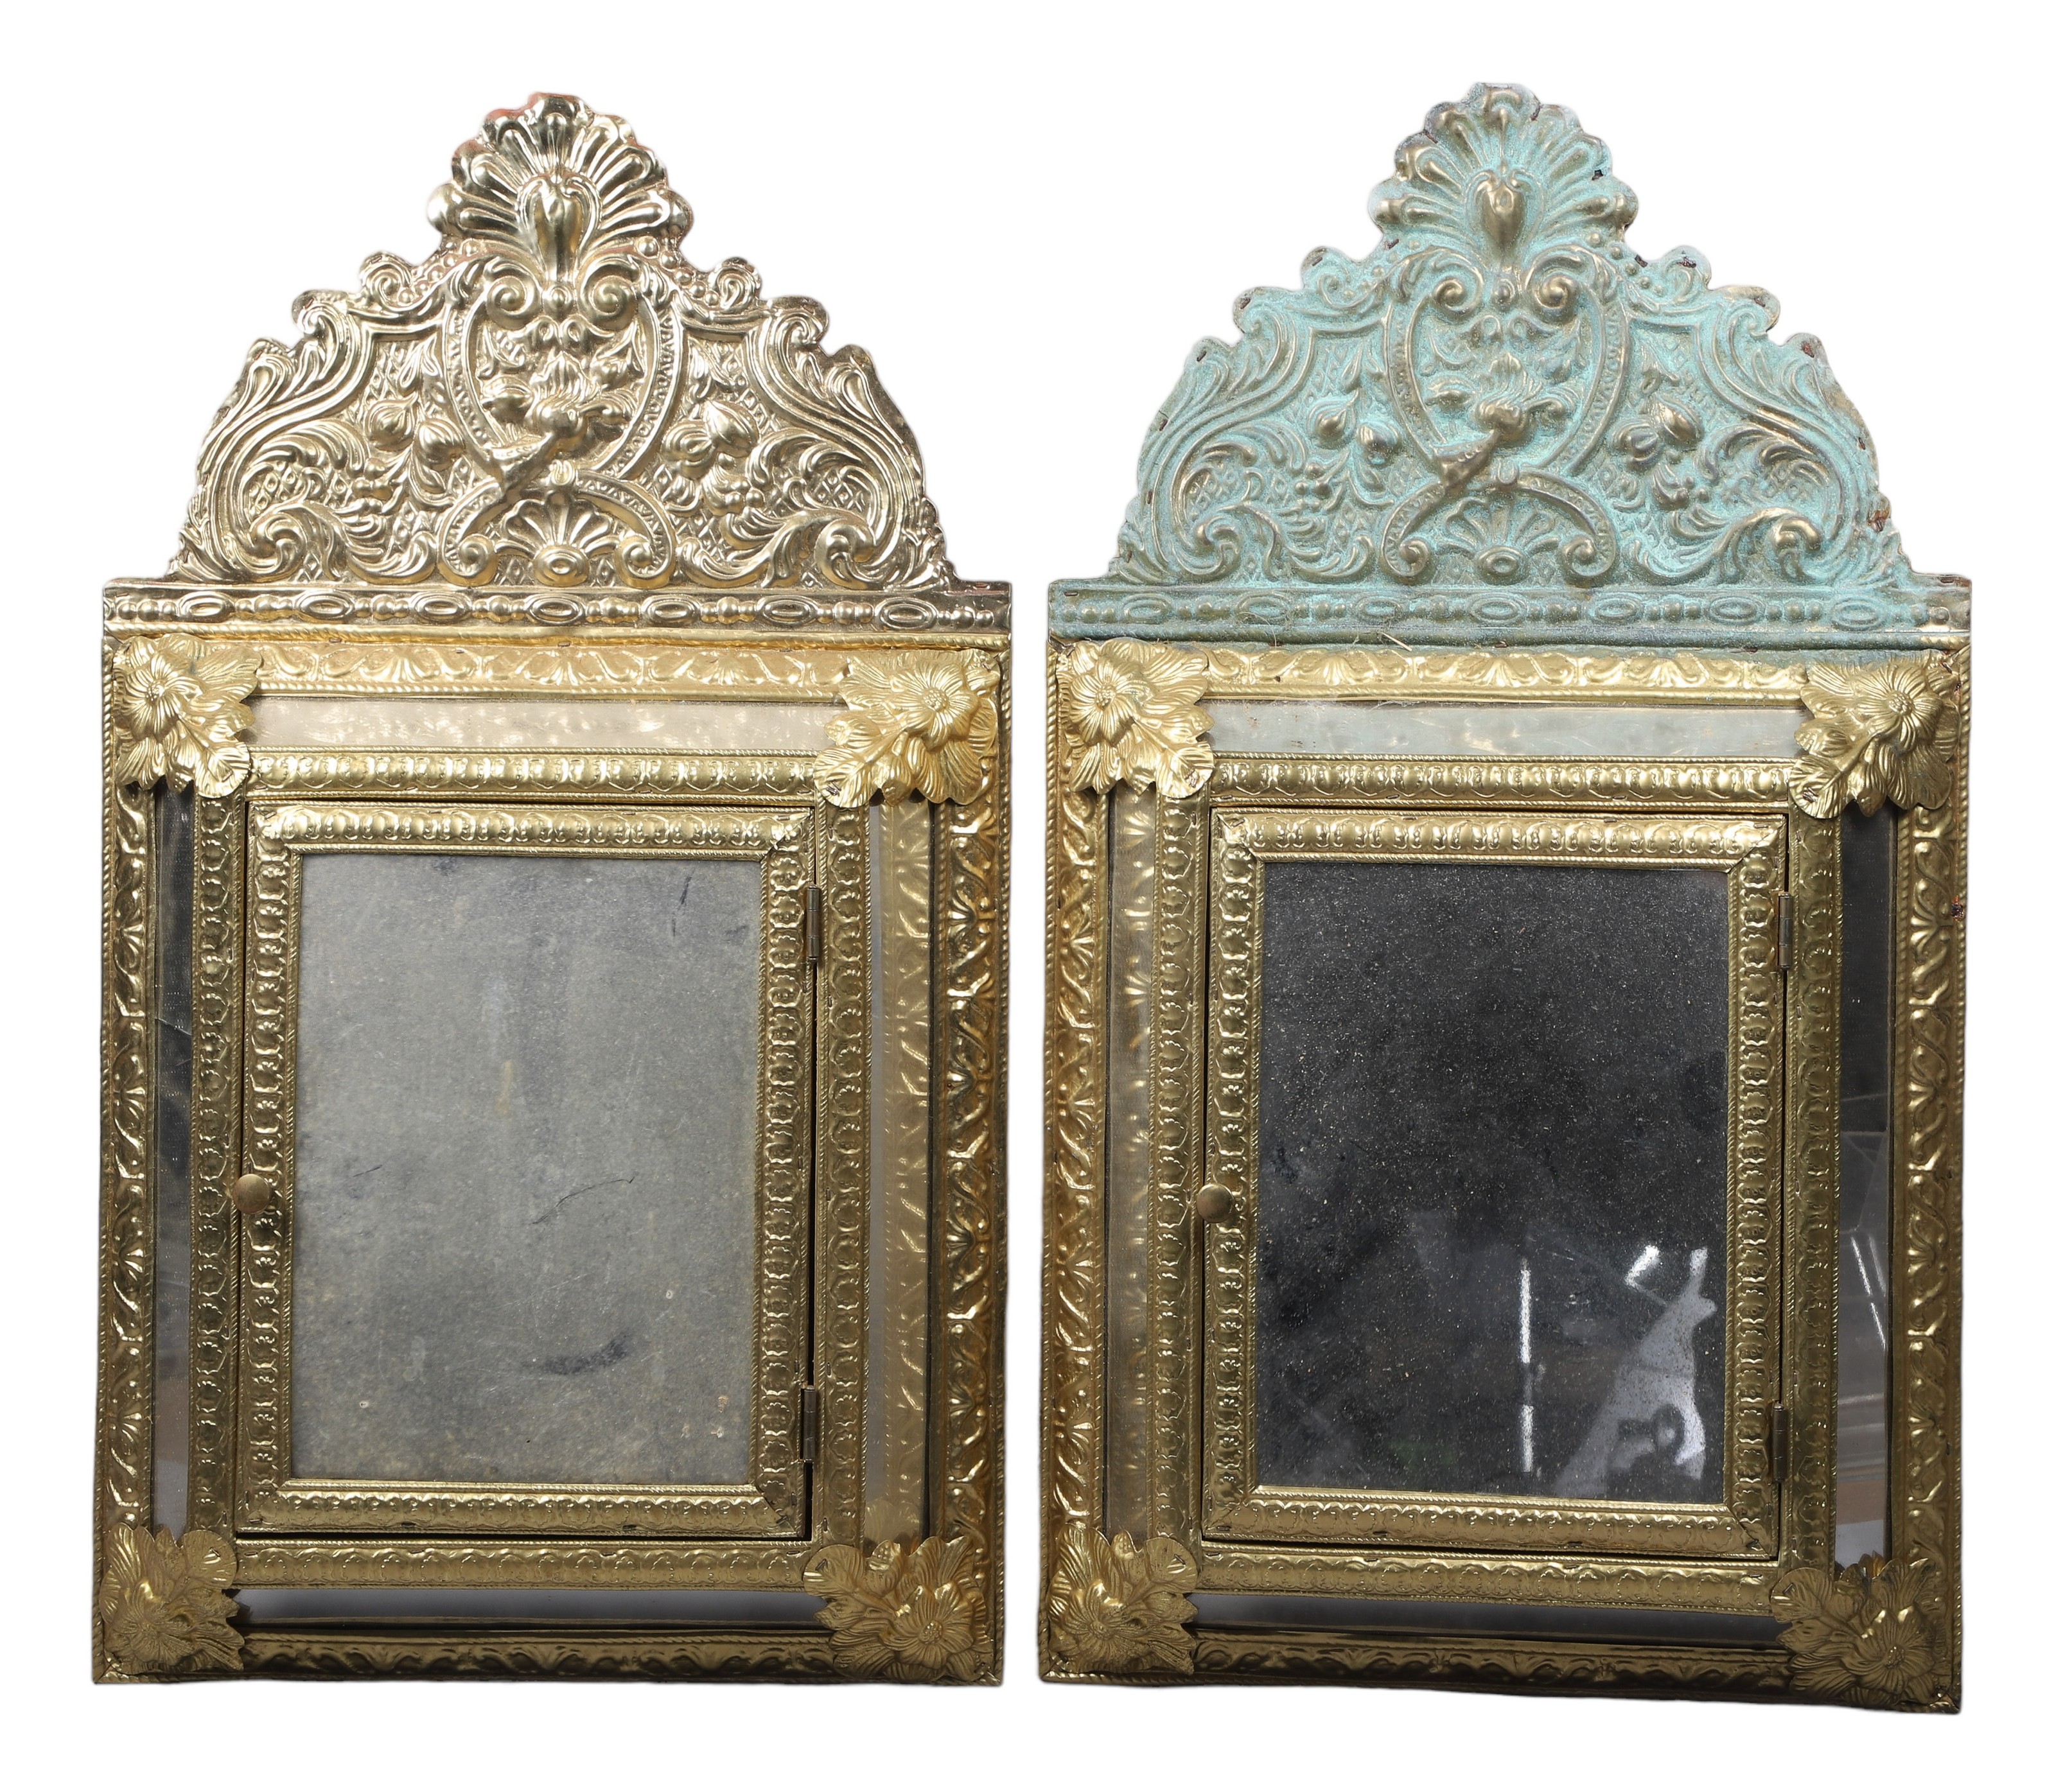  2 Embossed mirrored wall cabinets  2e13da